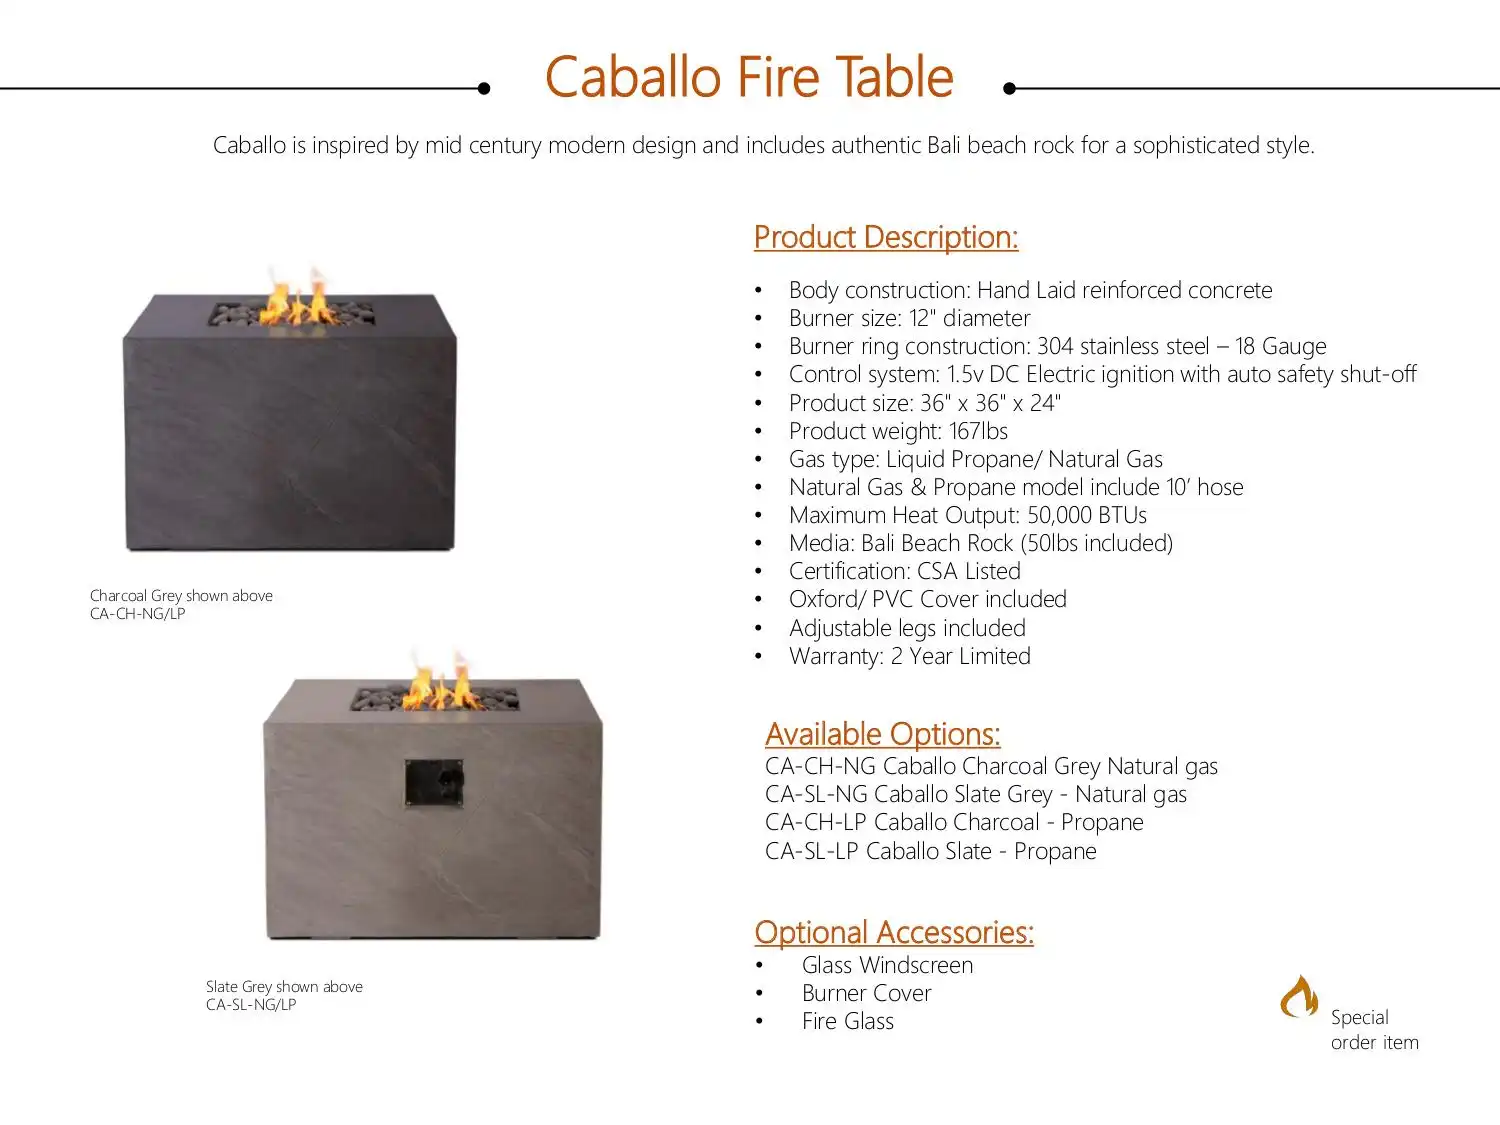 SO CABALLO FIRE TABLE C$ 2,500 by Pyromania